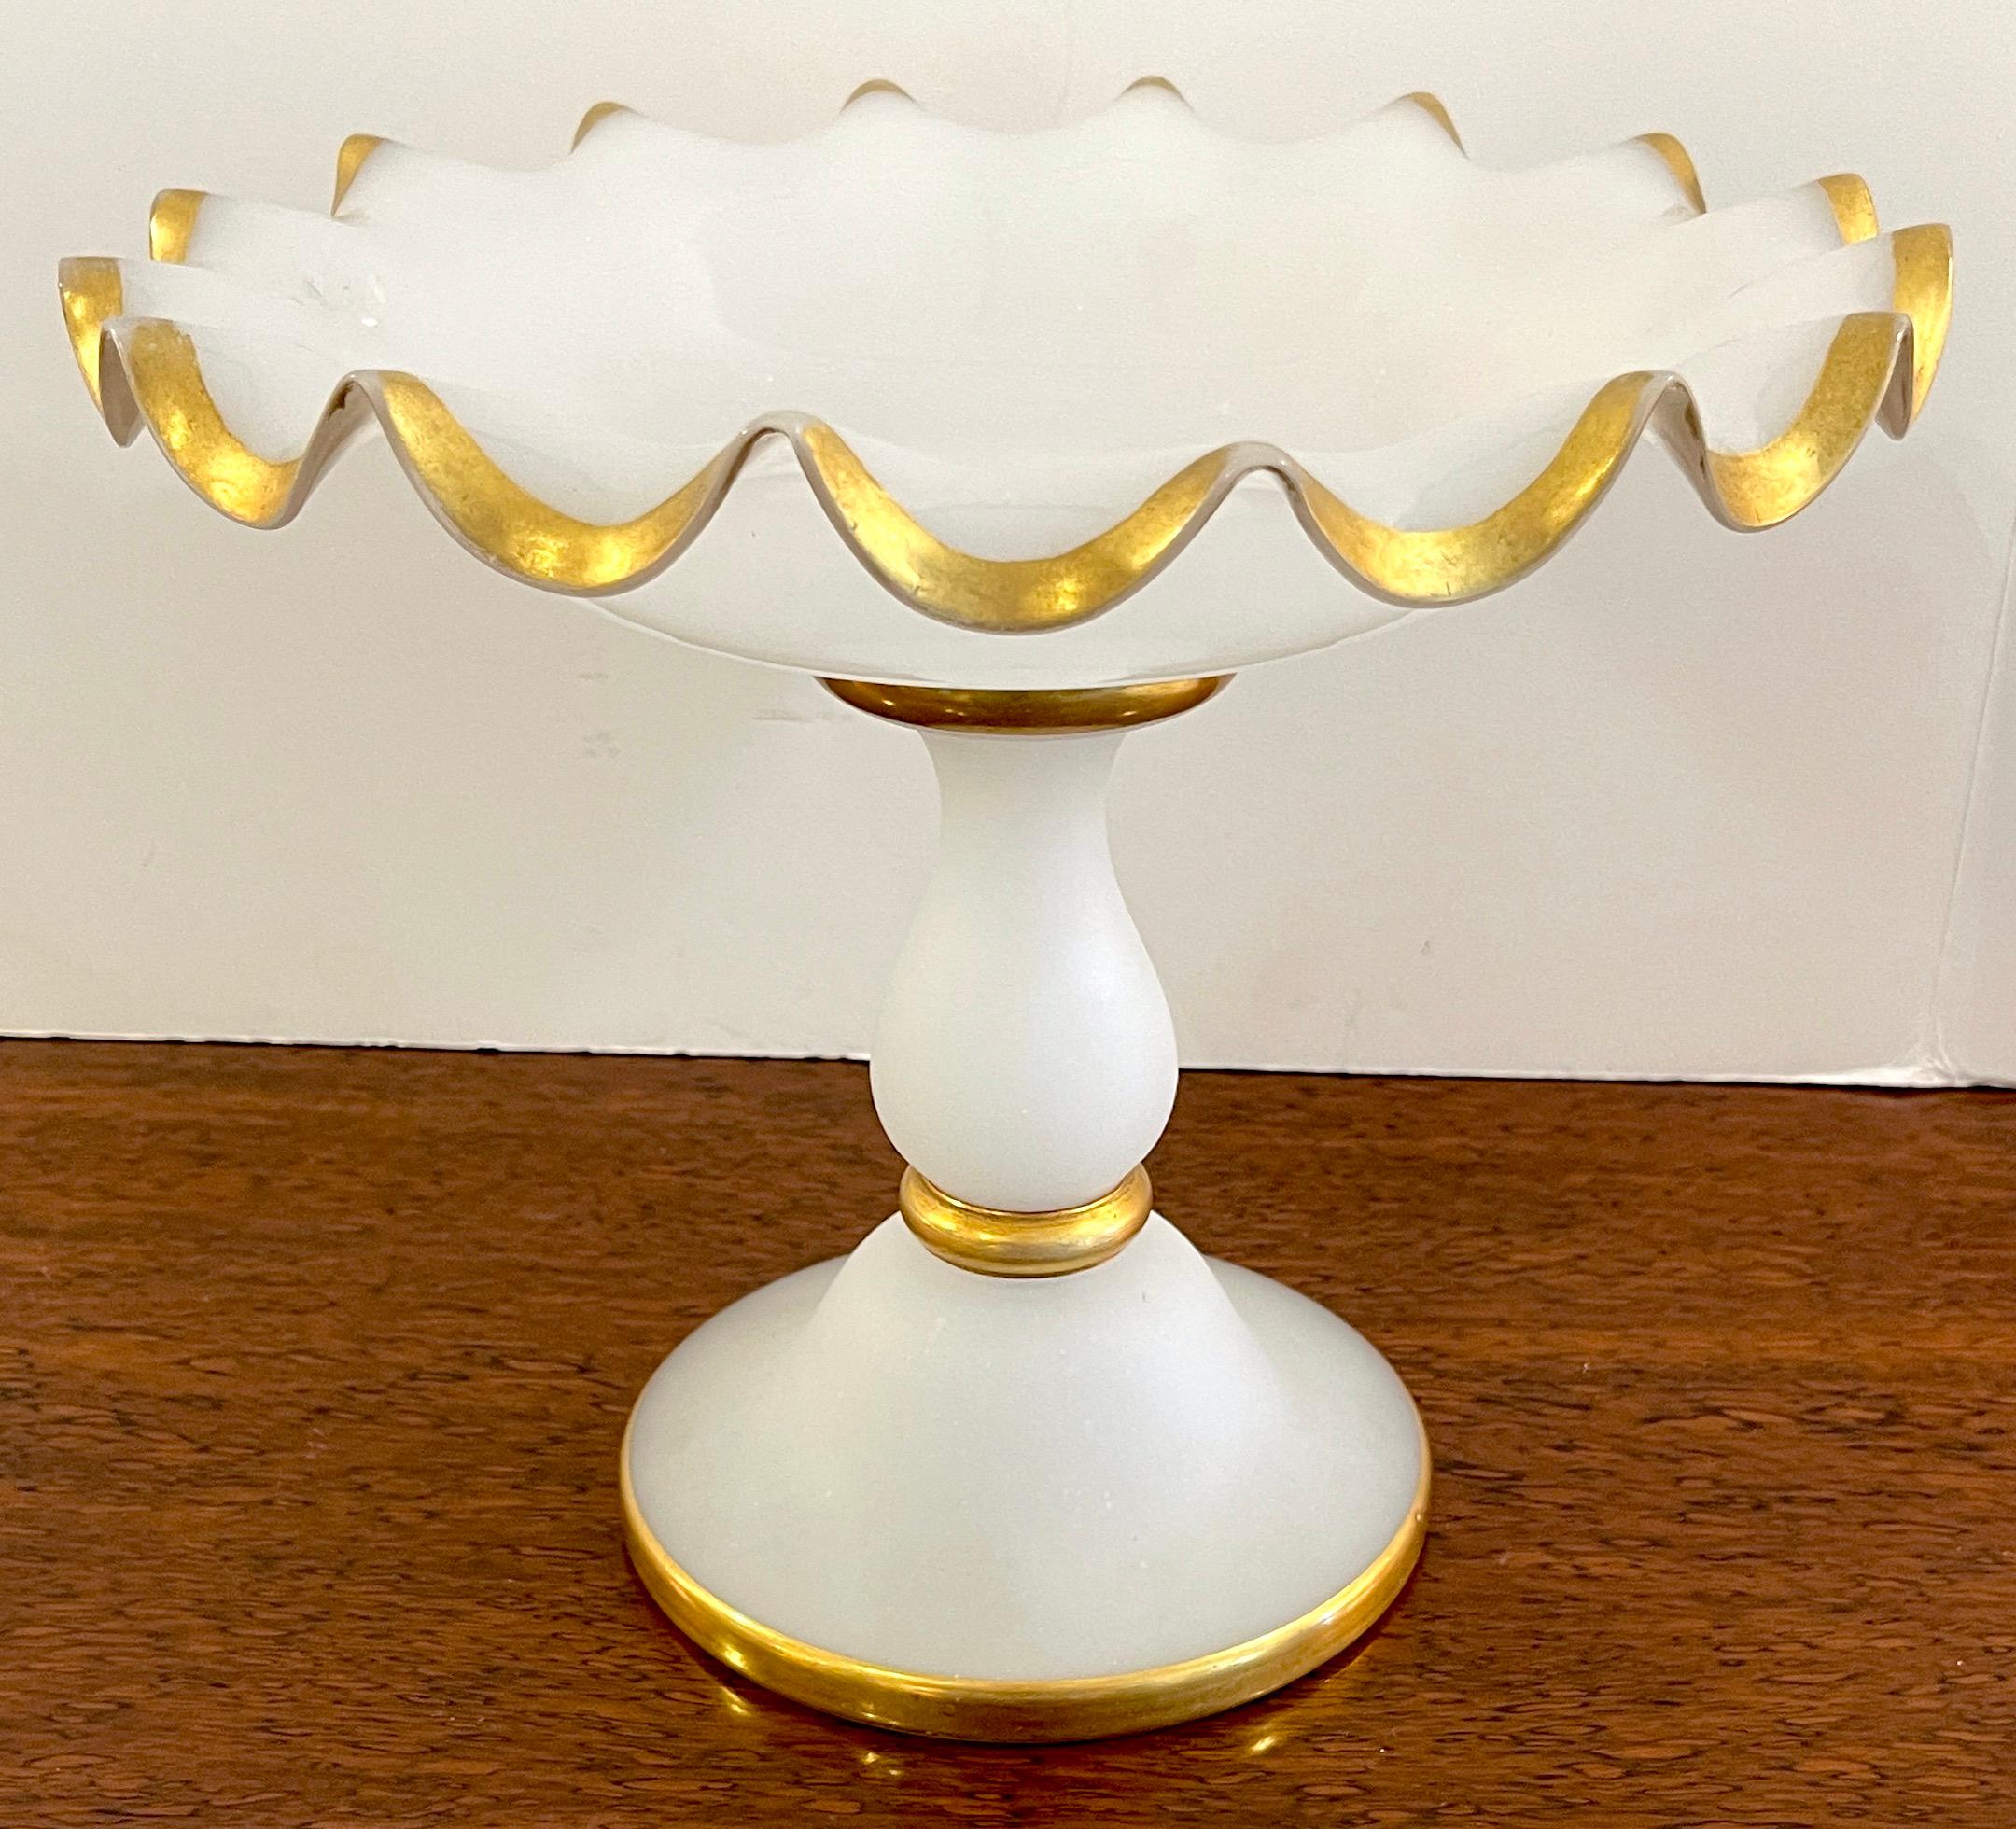 19. Jahrhundert Französisch vergoldet weiß opaline compote/tazza.
Frankreich, um 1880

Ein schönes Beispiel für französisches Opalglas aus dem 19. Jahrhundert, mit einer Opalglasschale mit durchgehendem, gewelltem Goldrand, die sicher auf einem